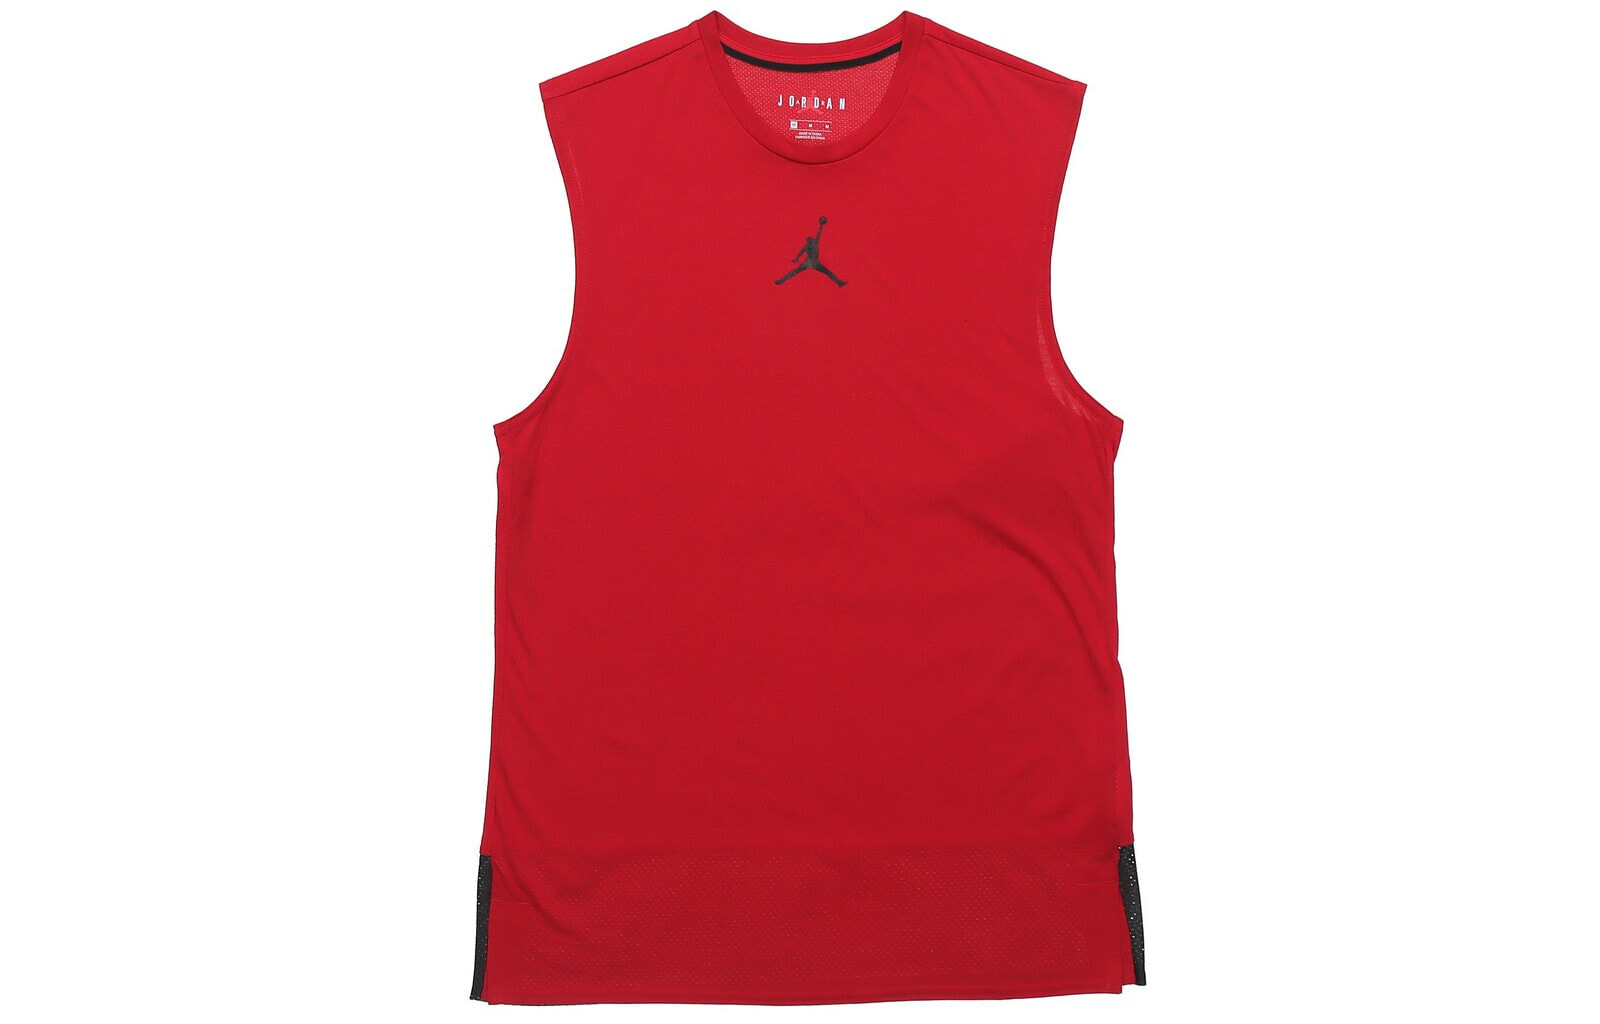 Jordan 篮球训练运动无袖背心 男款 红色 / Трендовая спортивная жилетка Jordan CJ4576-687 для баскетбола